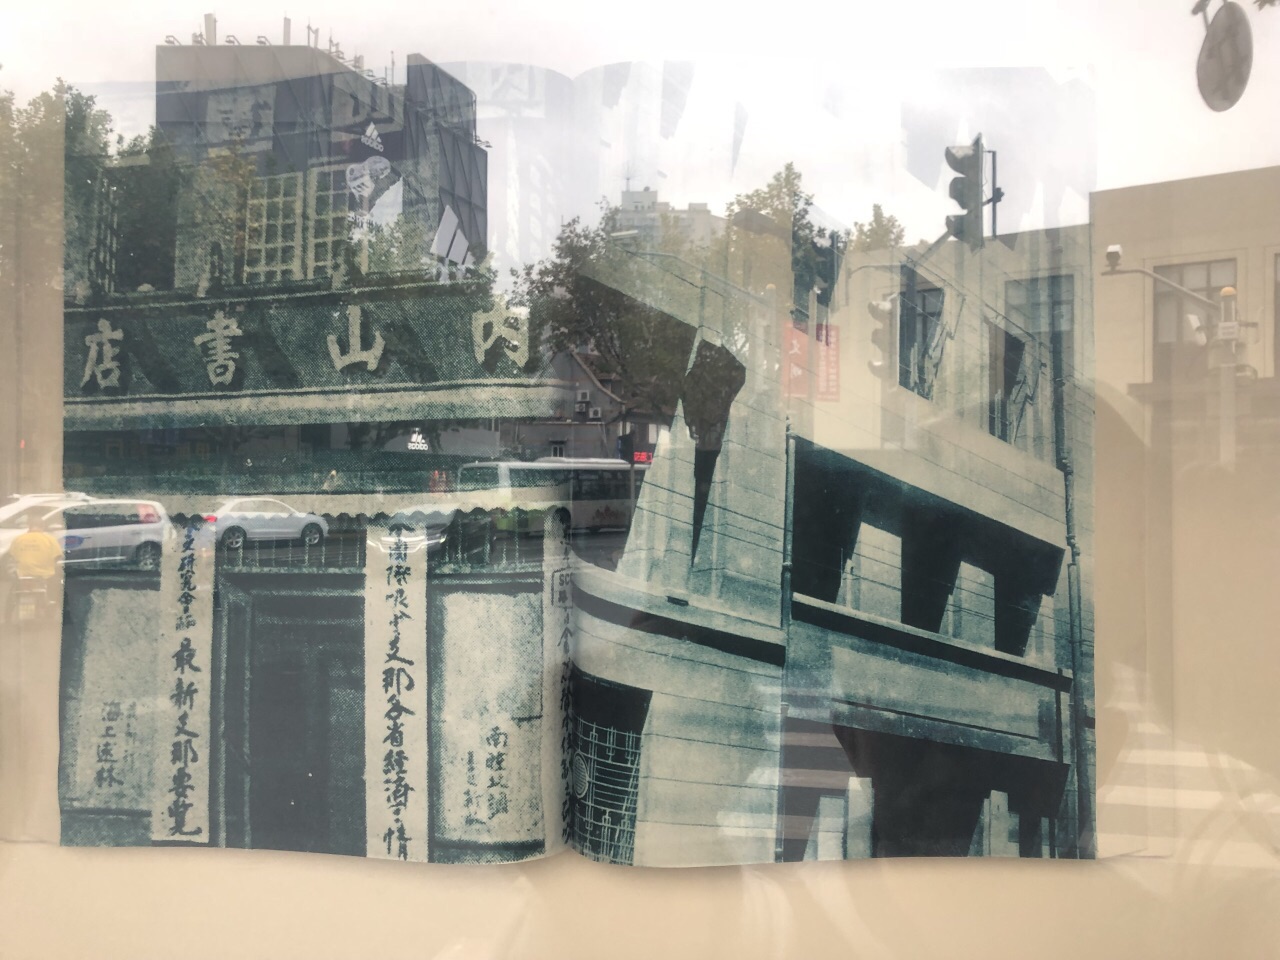 【携程攻略】上海内山书店旧址好玩吗,上海内山书店样